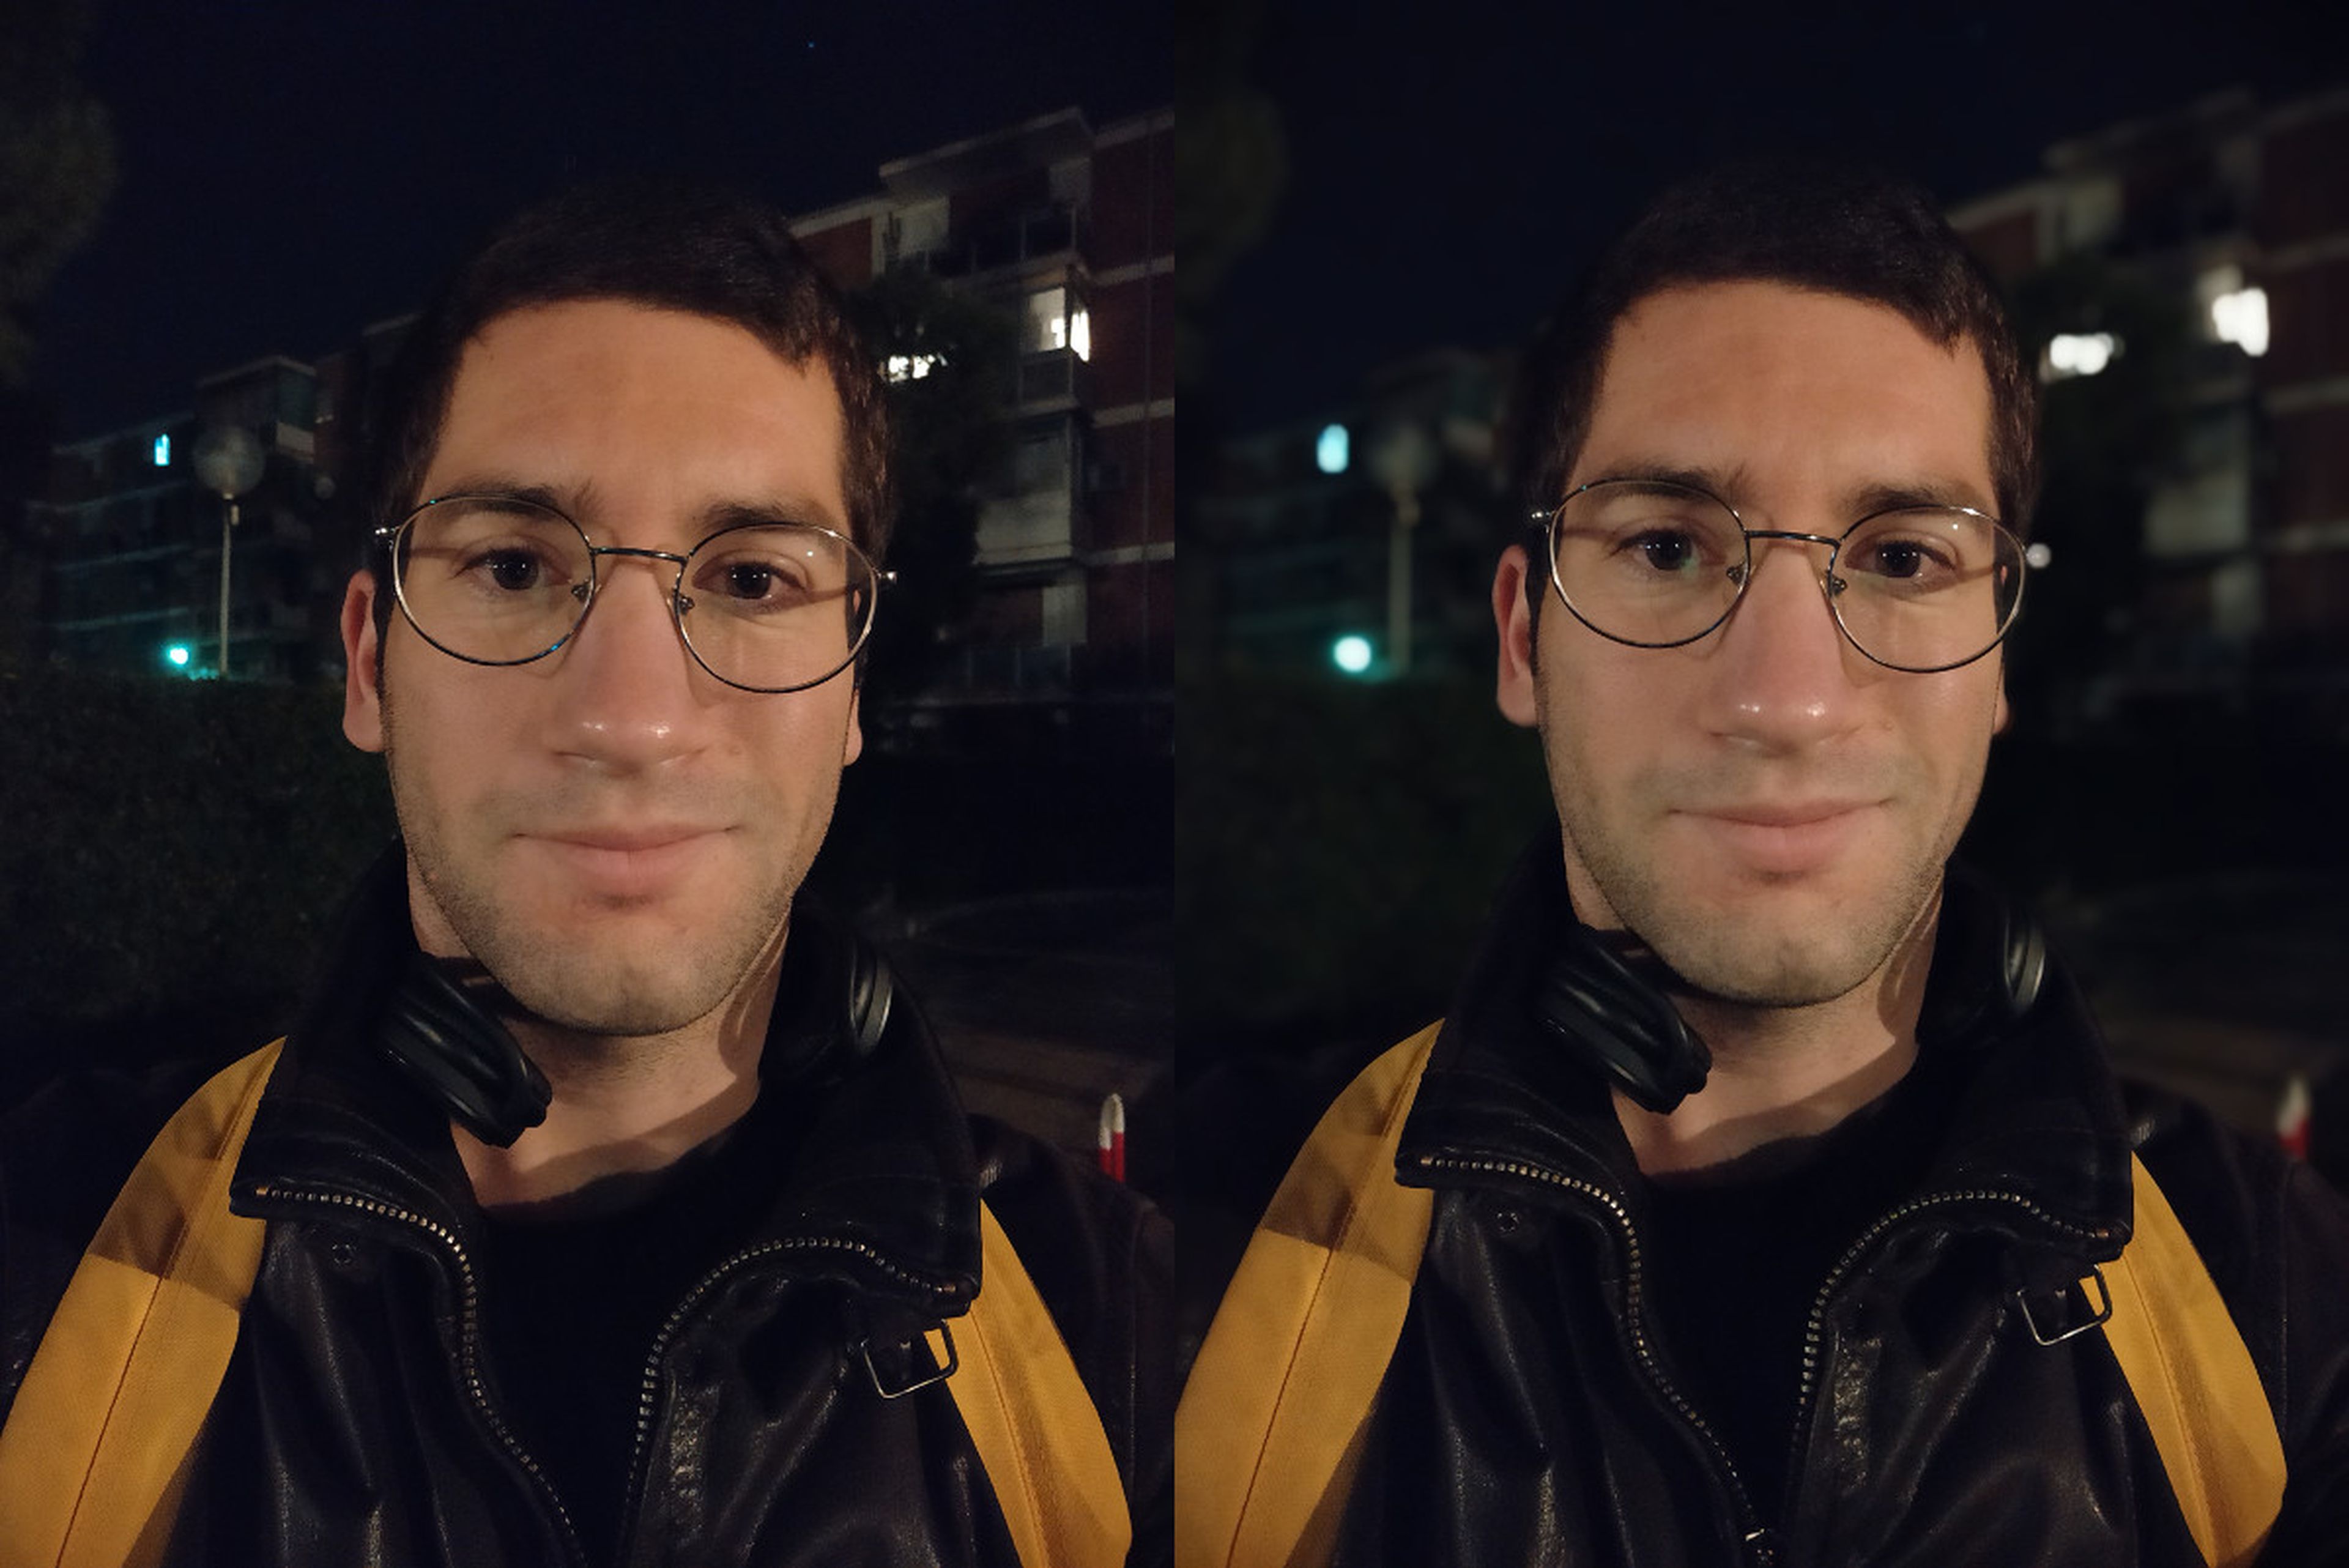 Izquierda: selfie nocturno sin retrato | Derecha: selfie nocturno con retrato